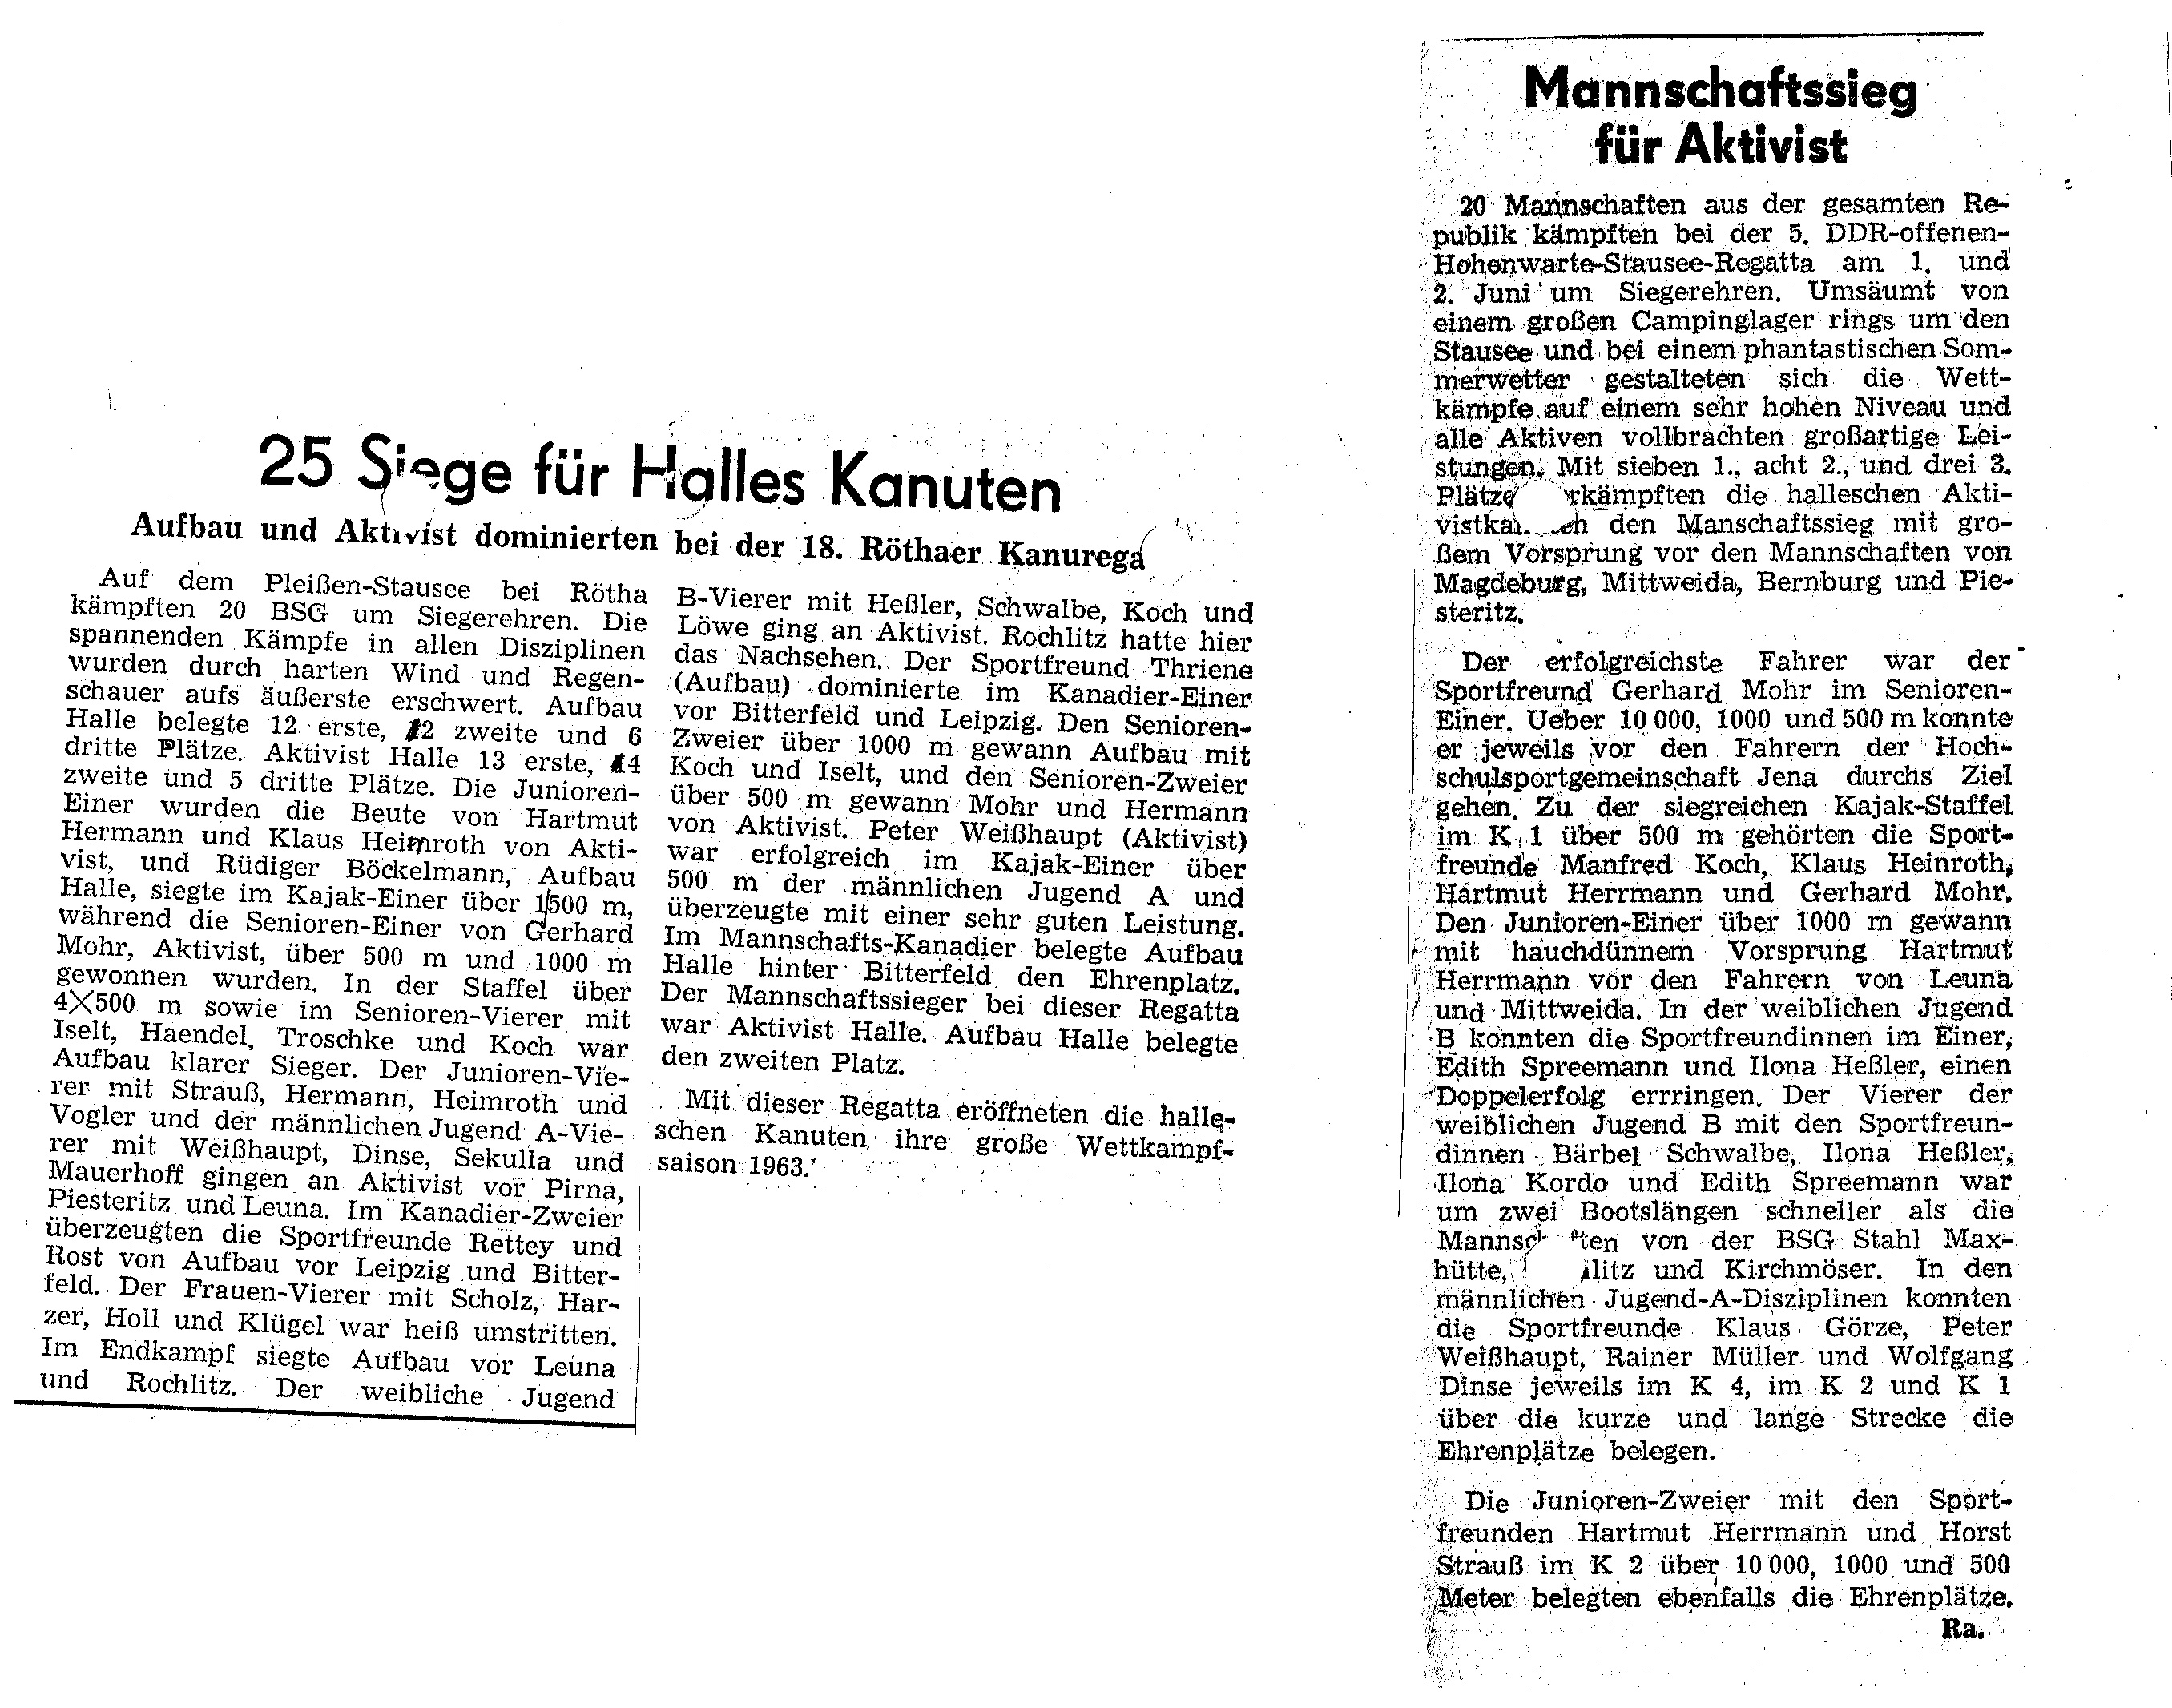 1963-06.02 Mannschaftssieg für Aktivist, 25 siege für Halles Kanuten